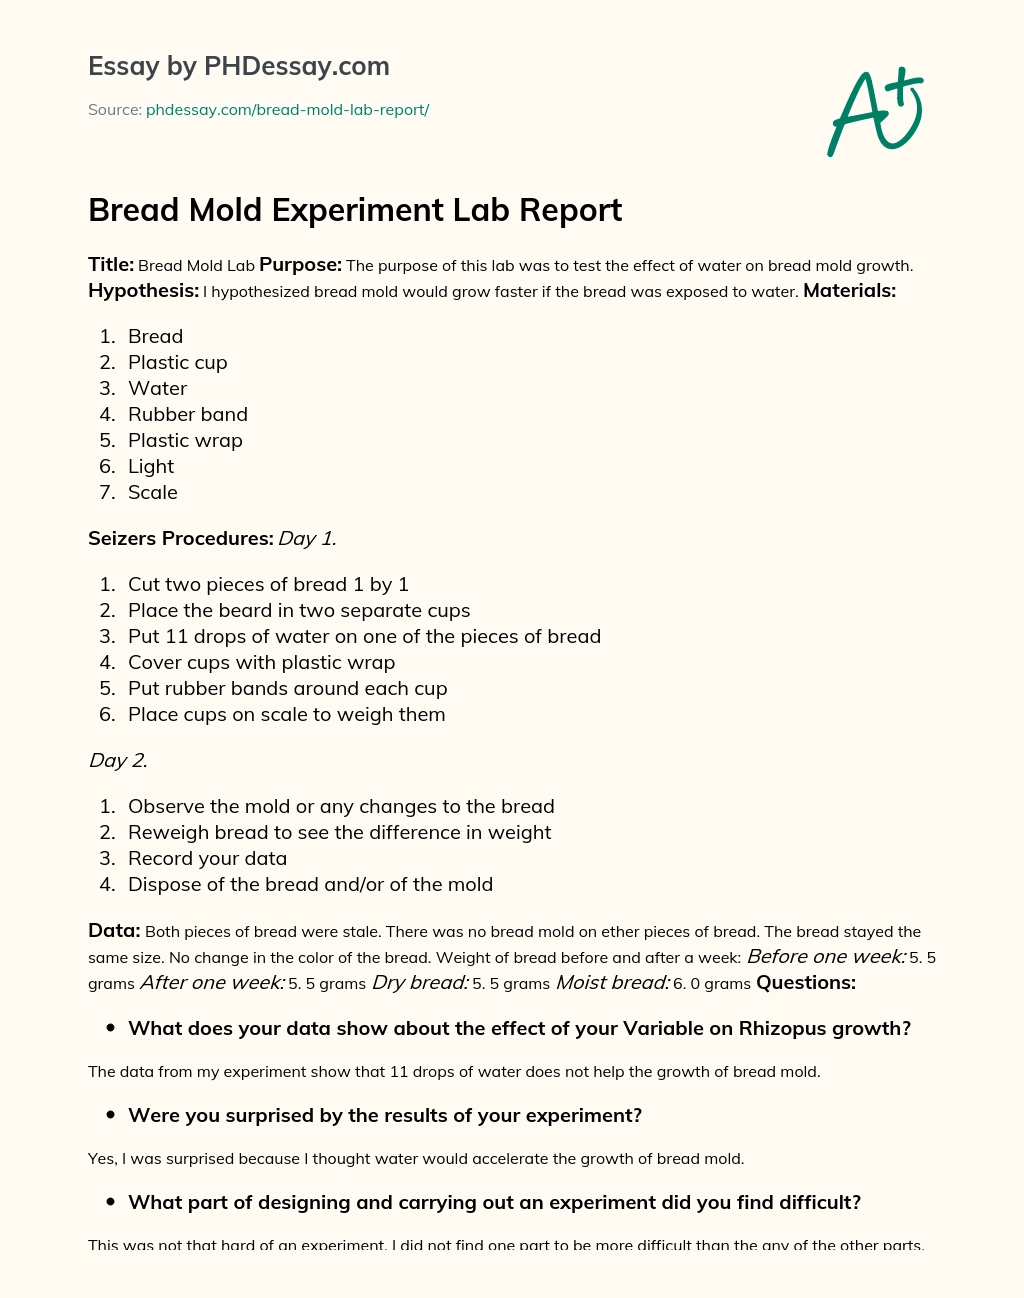 Bread Mold Experiment Lab Report essay